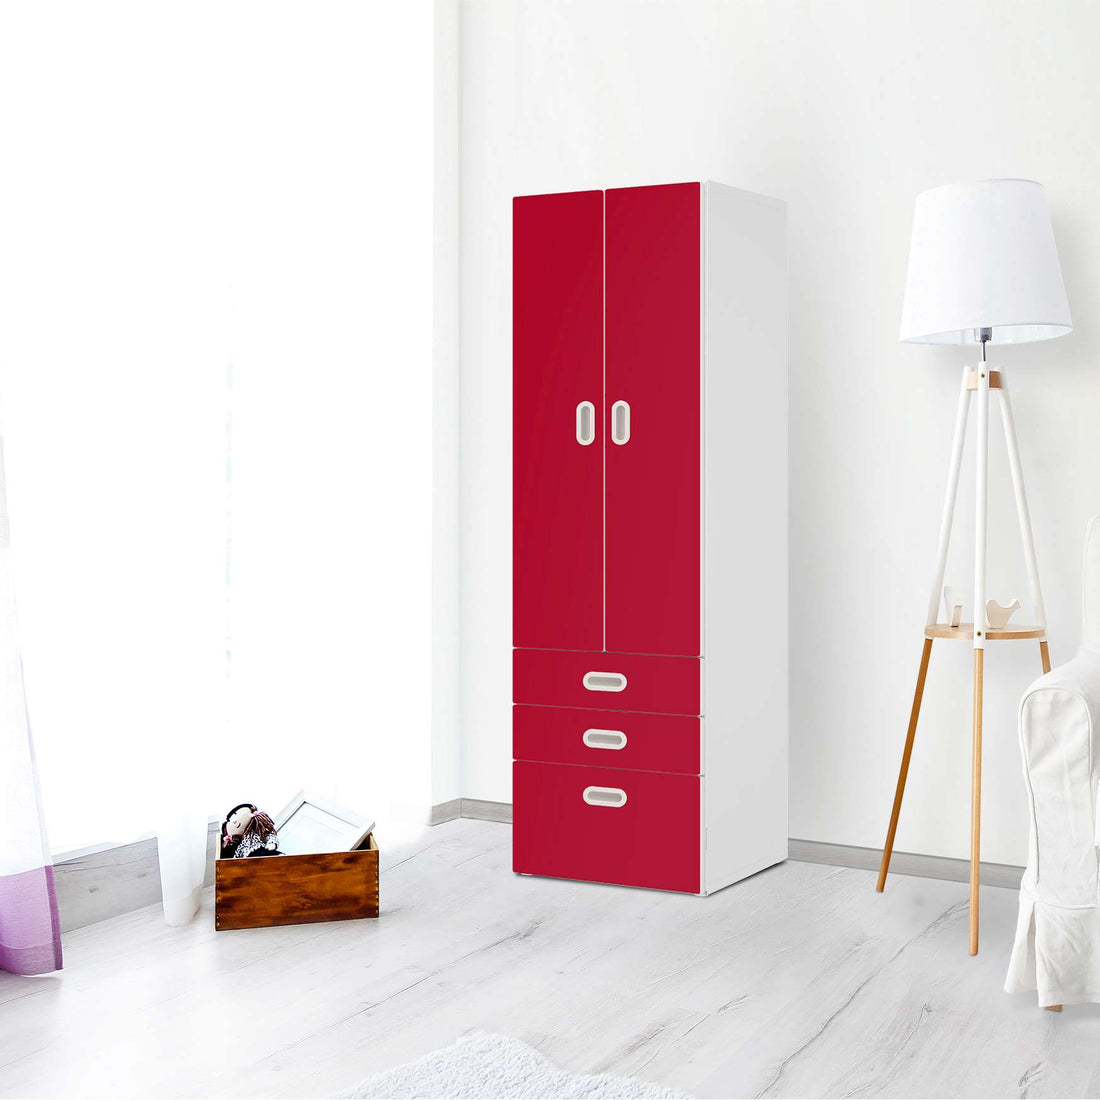 Klebefolie Rot Dark - IKEA Stuva / Fritids kombiniert - 3 Schubladen und 2 große Türen - Kinderzimmer